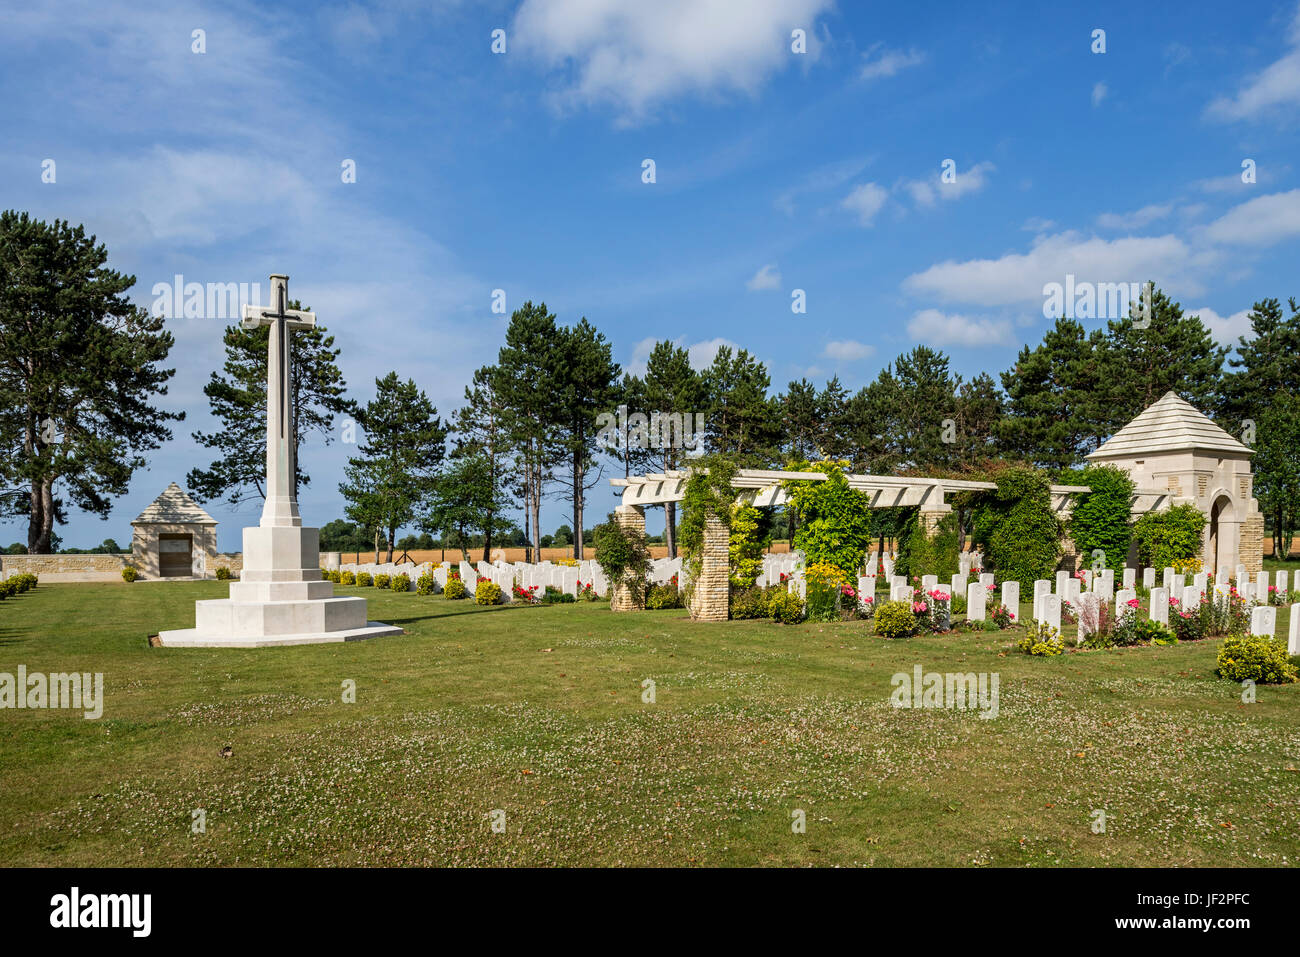 Le cimetière de guerre britannique de la brêche, contient 652 sépultures du Commonwealth de la Seconde Guerre mondiale, Bazenville, Calvados, Normandie, France Banque D'Images